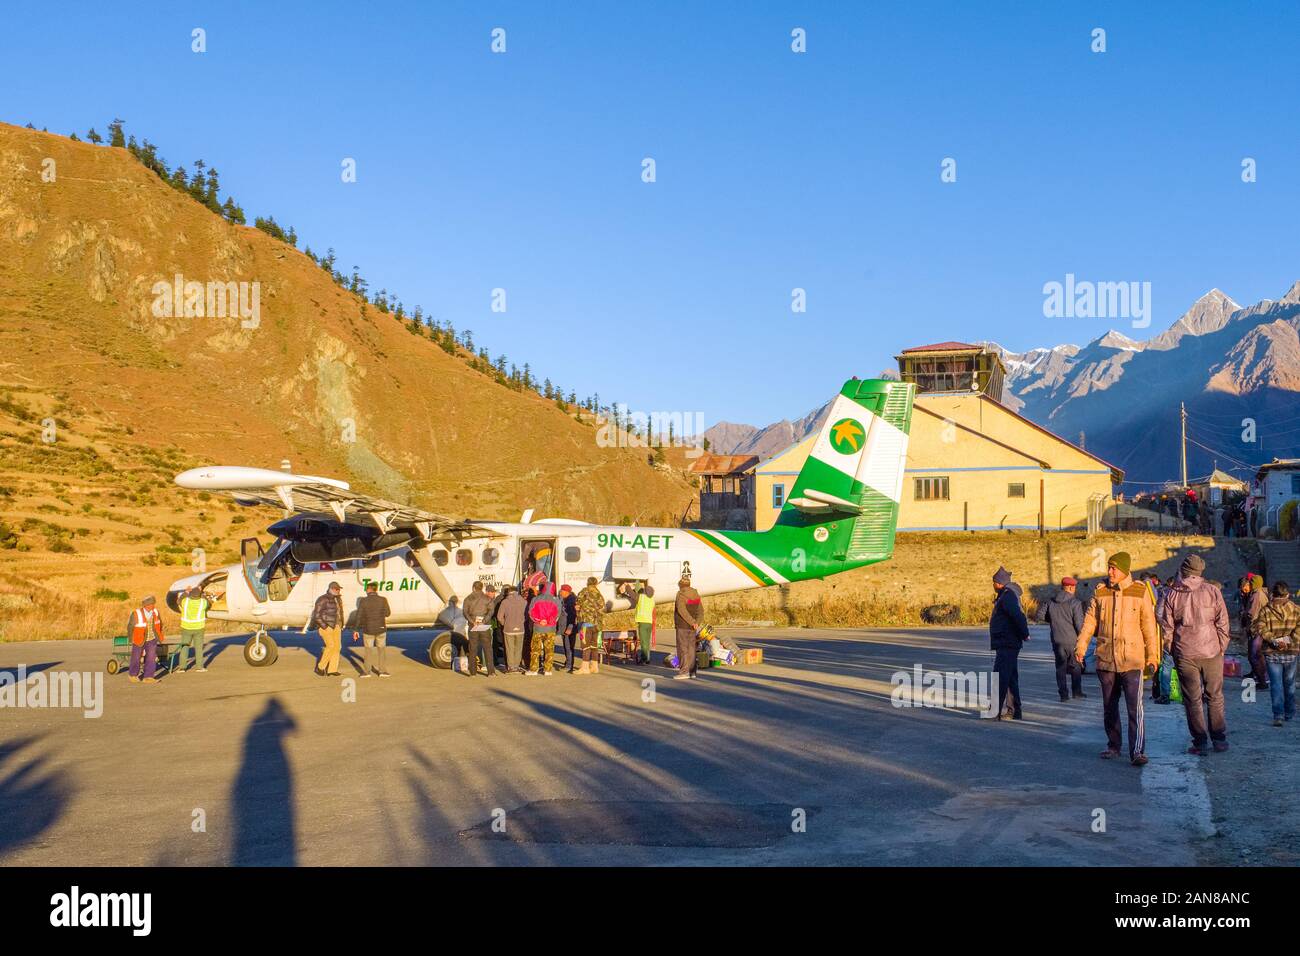 Kleines Tara Air-Flugzeug auf der Startbahn am Flughafen von Jupal in Dolpo, Nepal Stockfoto